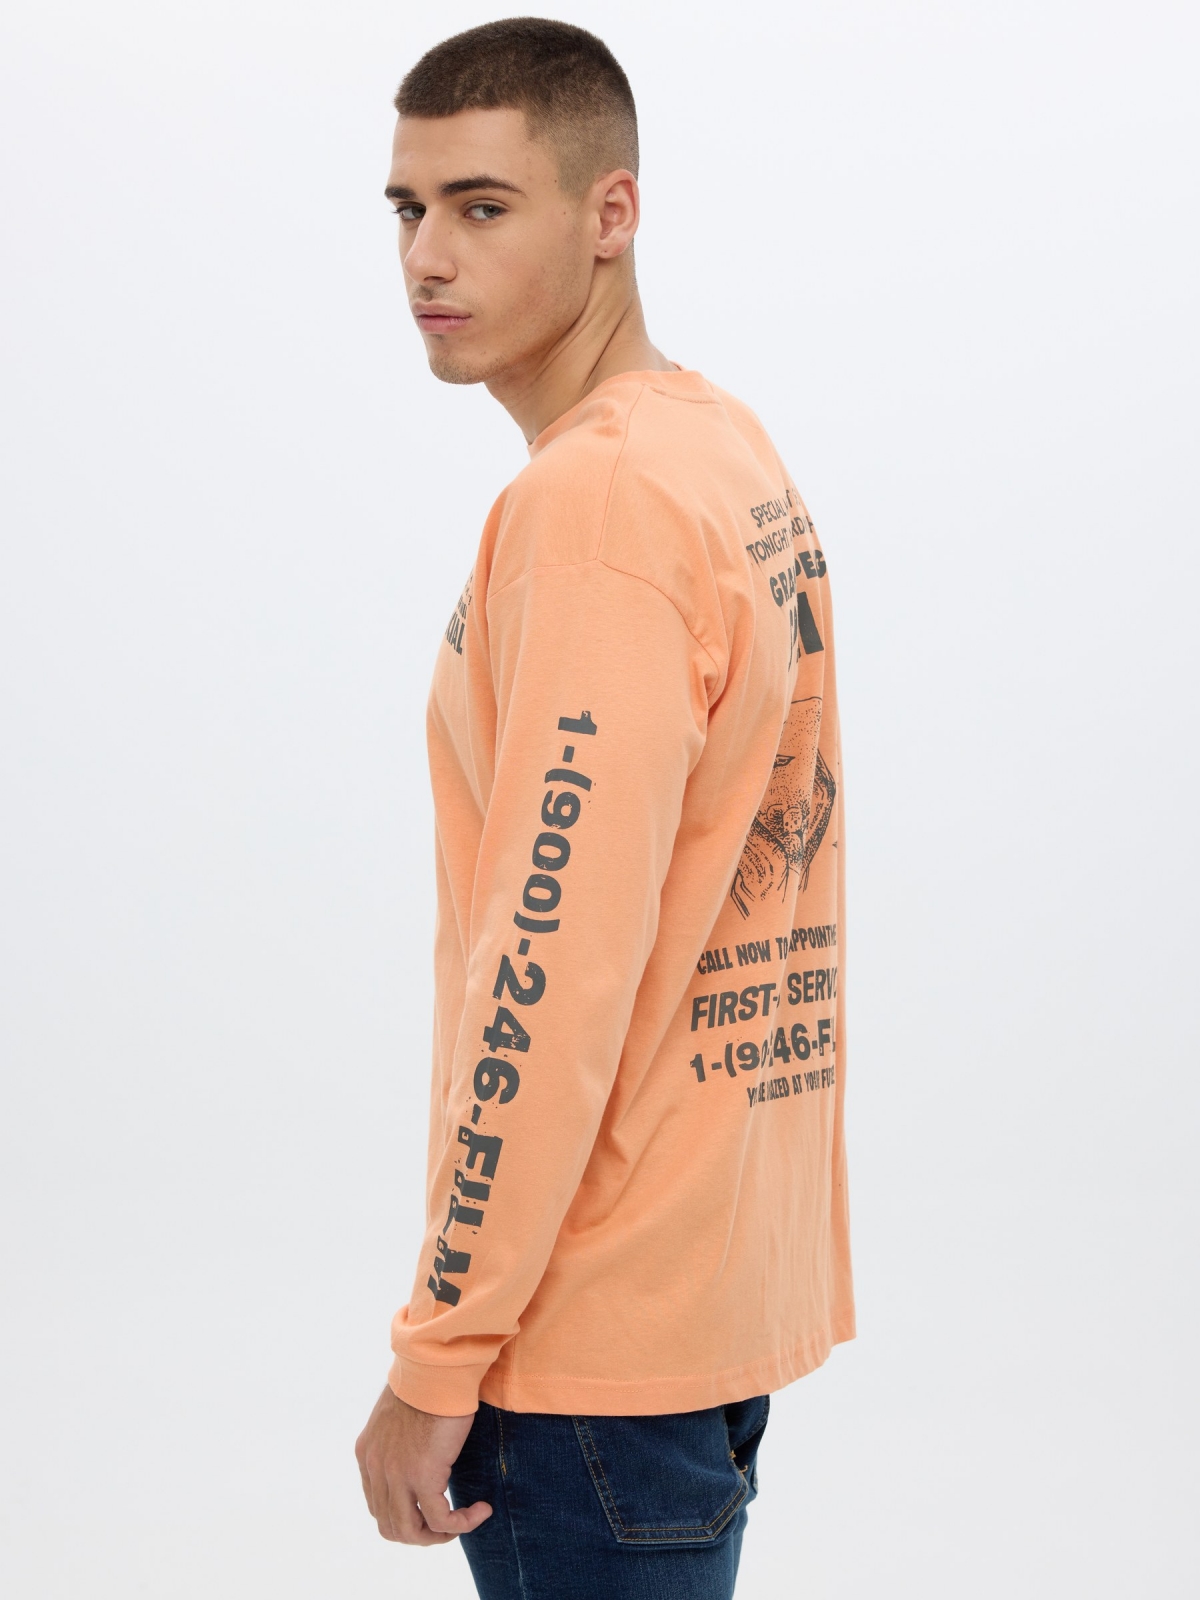 Camiseta print texto coral vista detalle